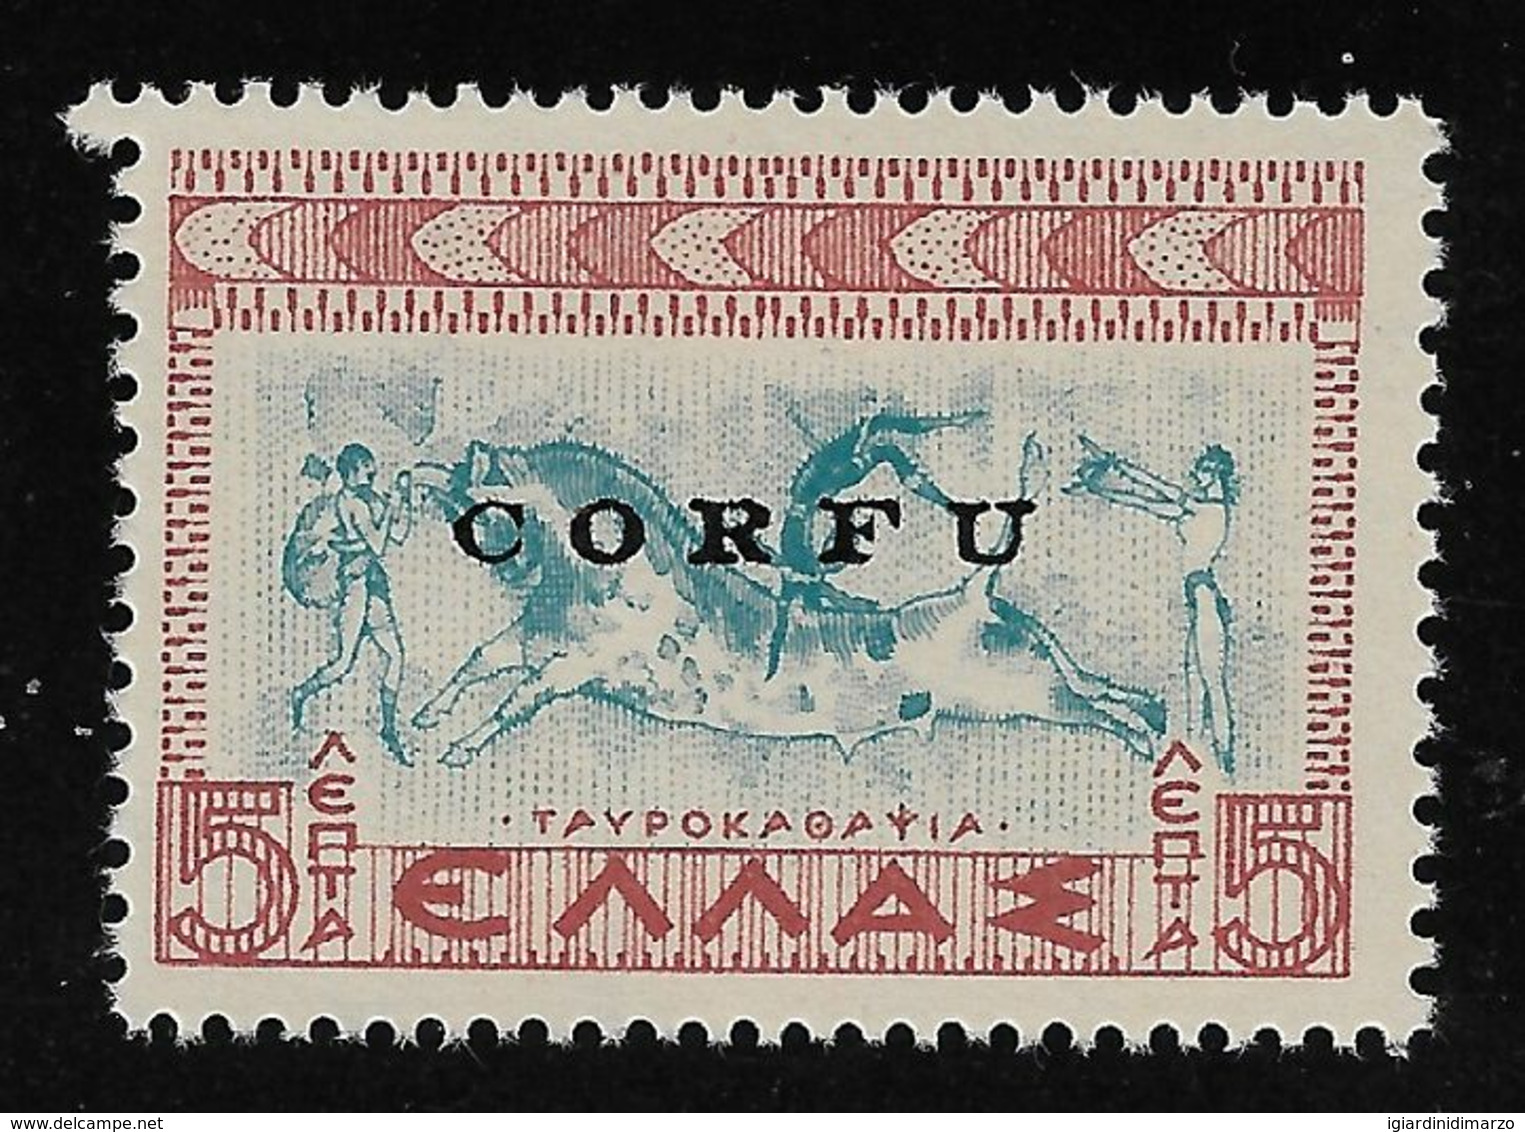 CORFU' - 1941 - Valore Nuovo Stl Da 5 L. Della Grecia Con Soprastampato CORFU' - In Ottime Condizioni. - Corfù